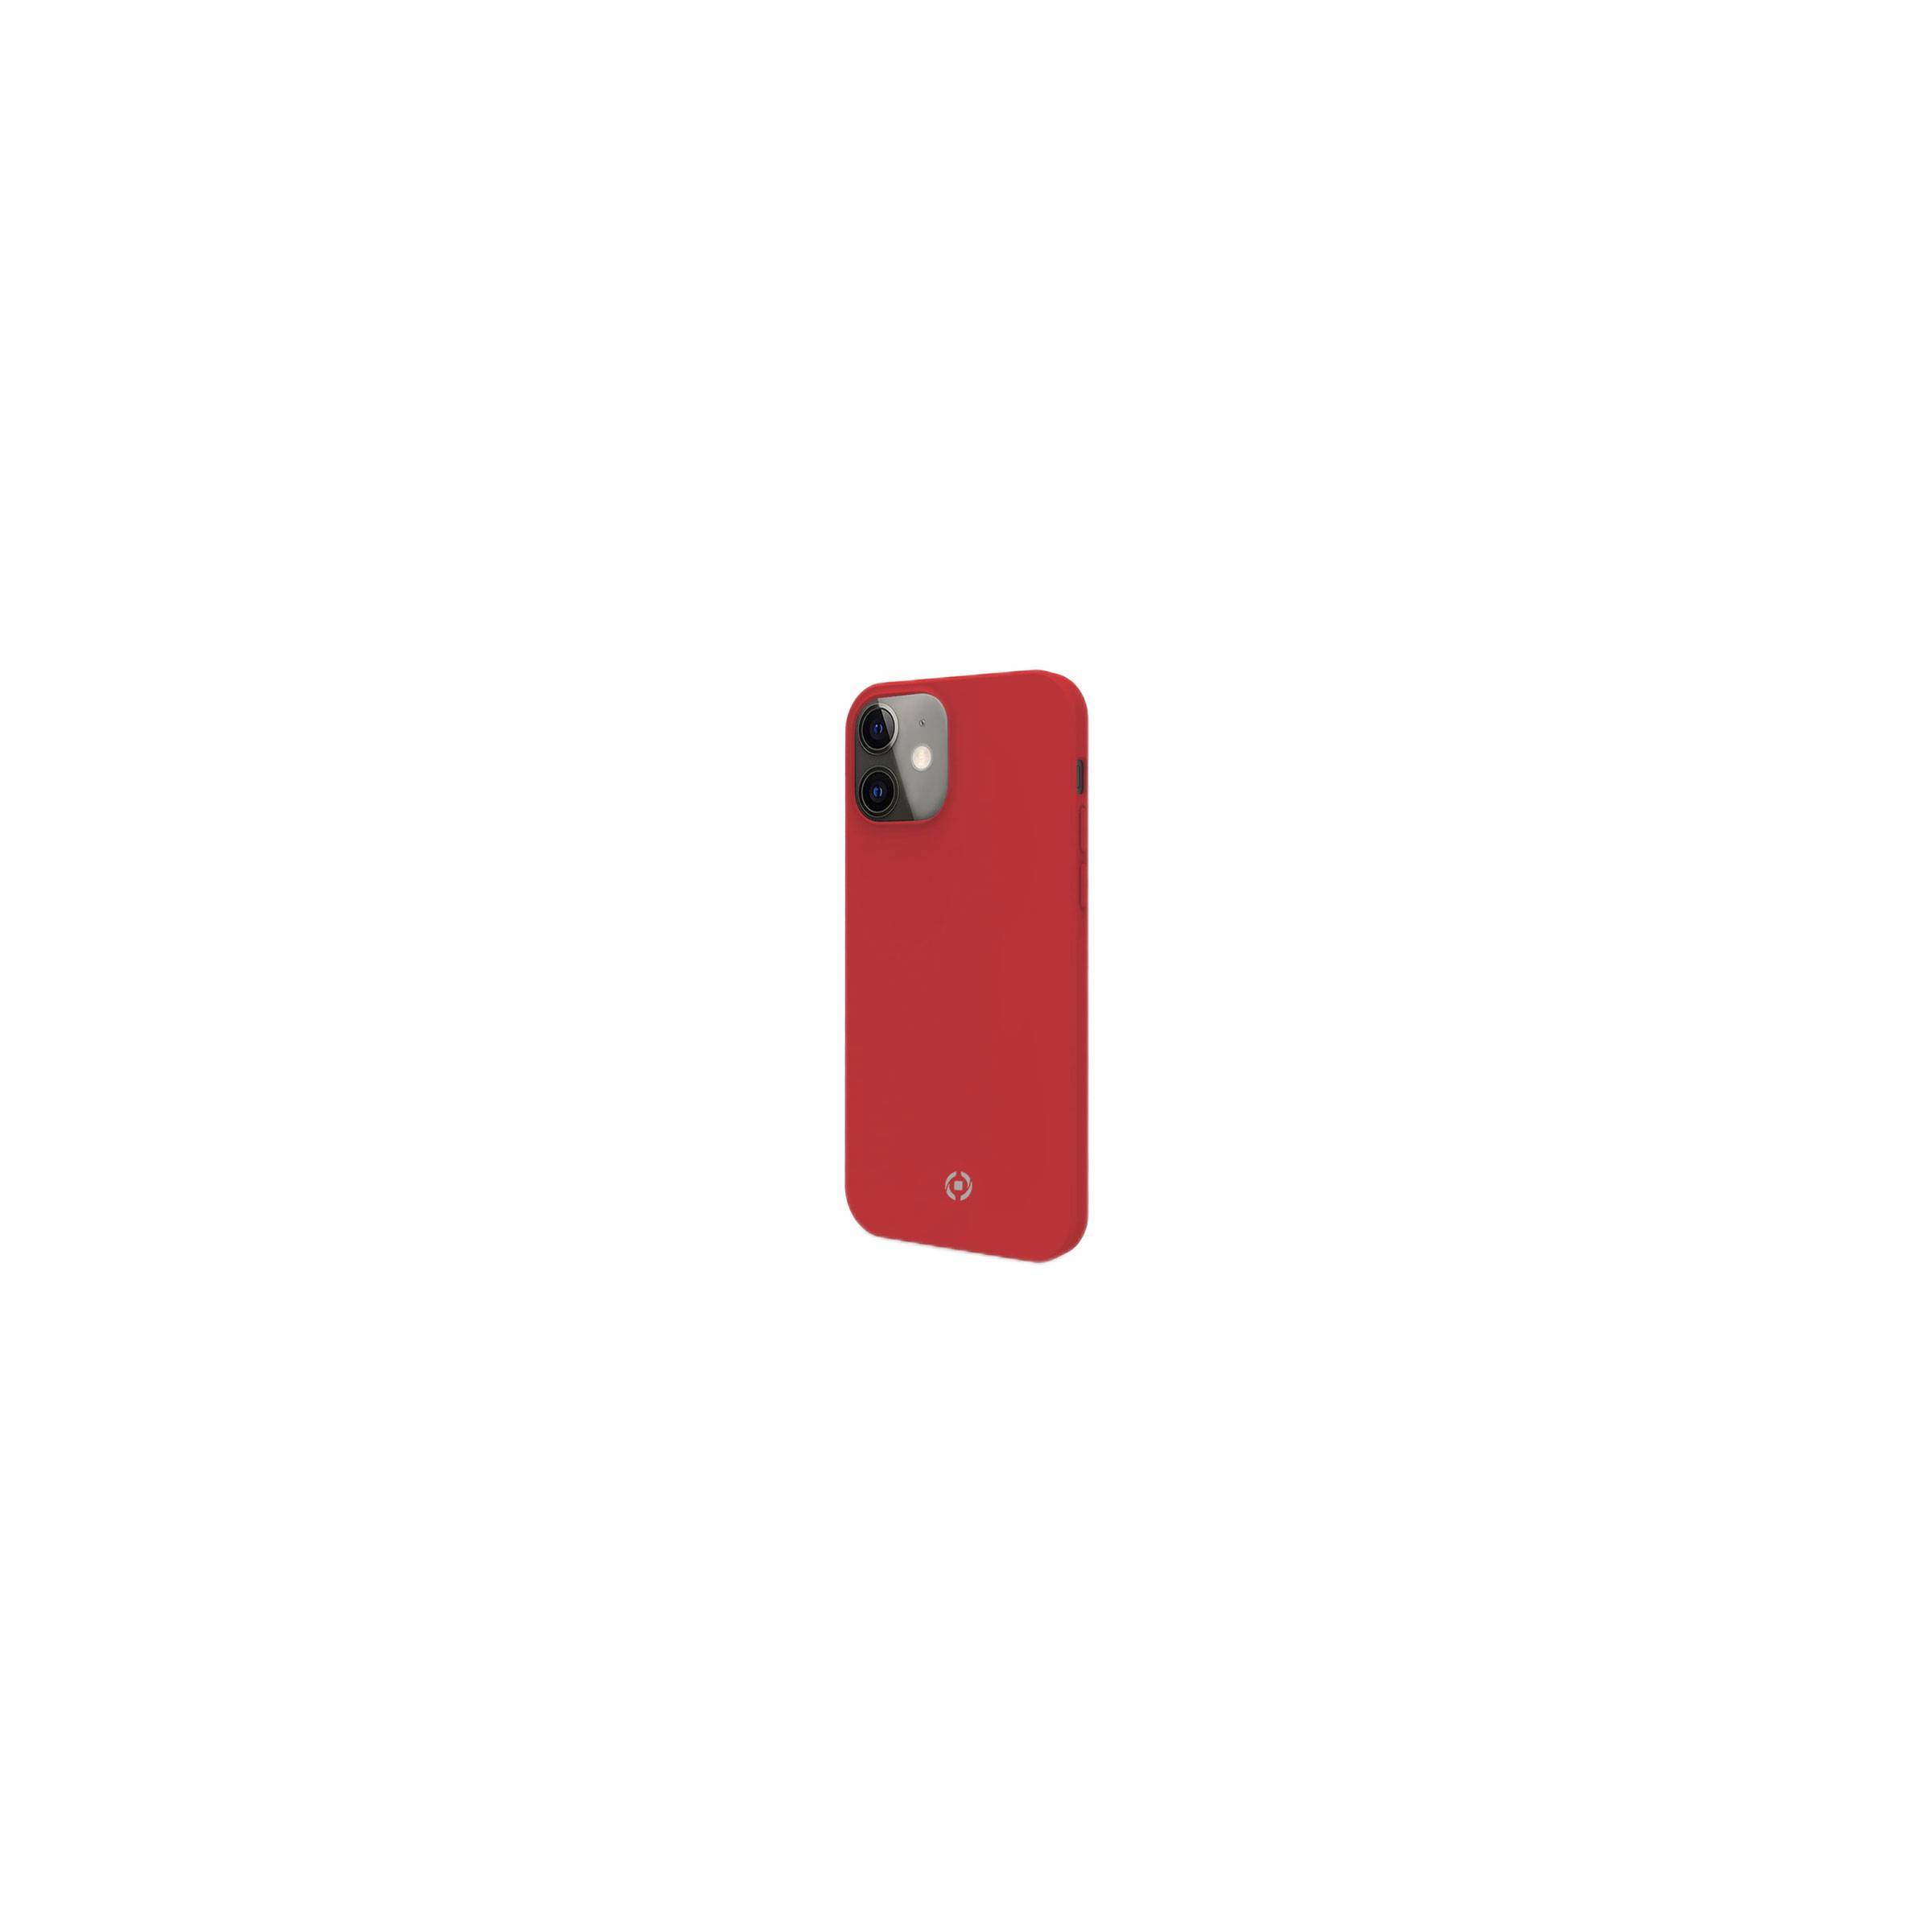 Bilde av Celly Feeling Iphone 12 Mini Silikone Cover, Rød